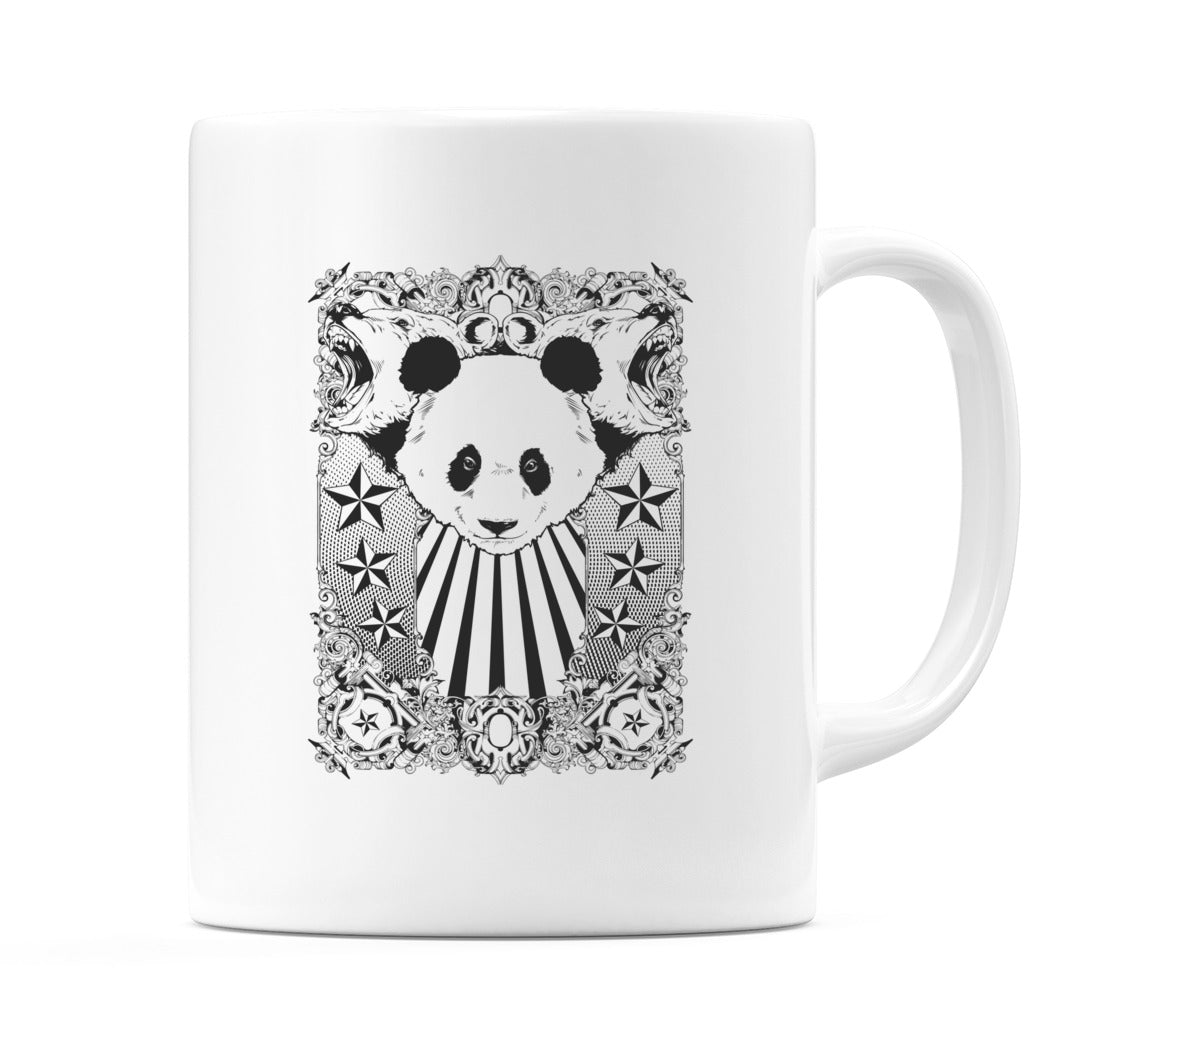 Panda Mug